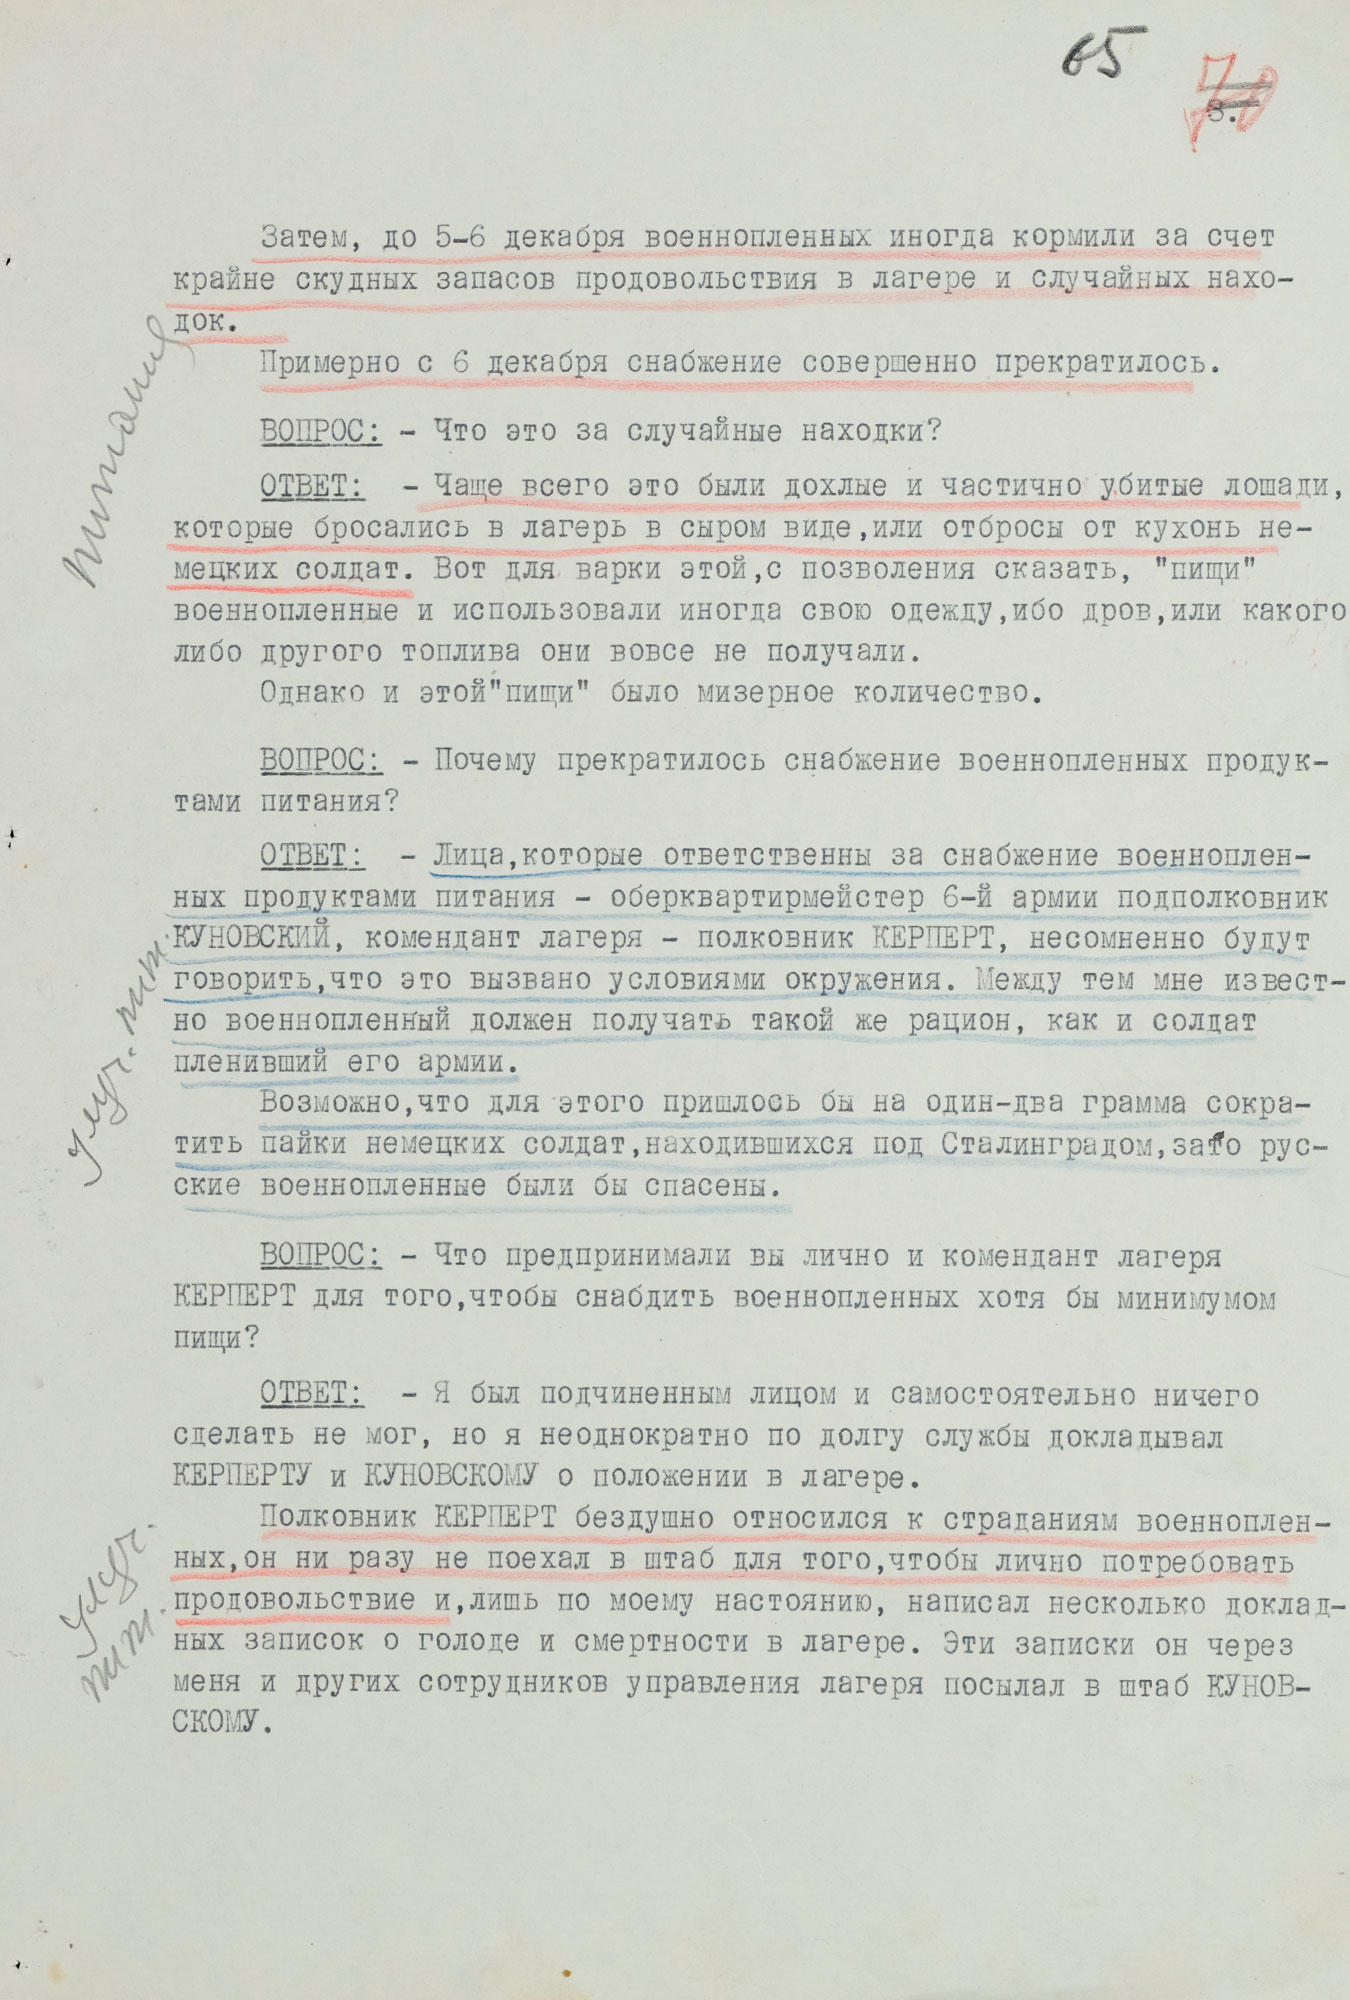 Протокол допроса военнопленного обер-лейтенанта германской армии МЕДЕРА Отто, адъютанта коменданта «Дулаг-205». 27 августа 1943 г. Страница 3